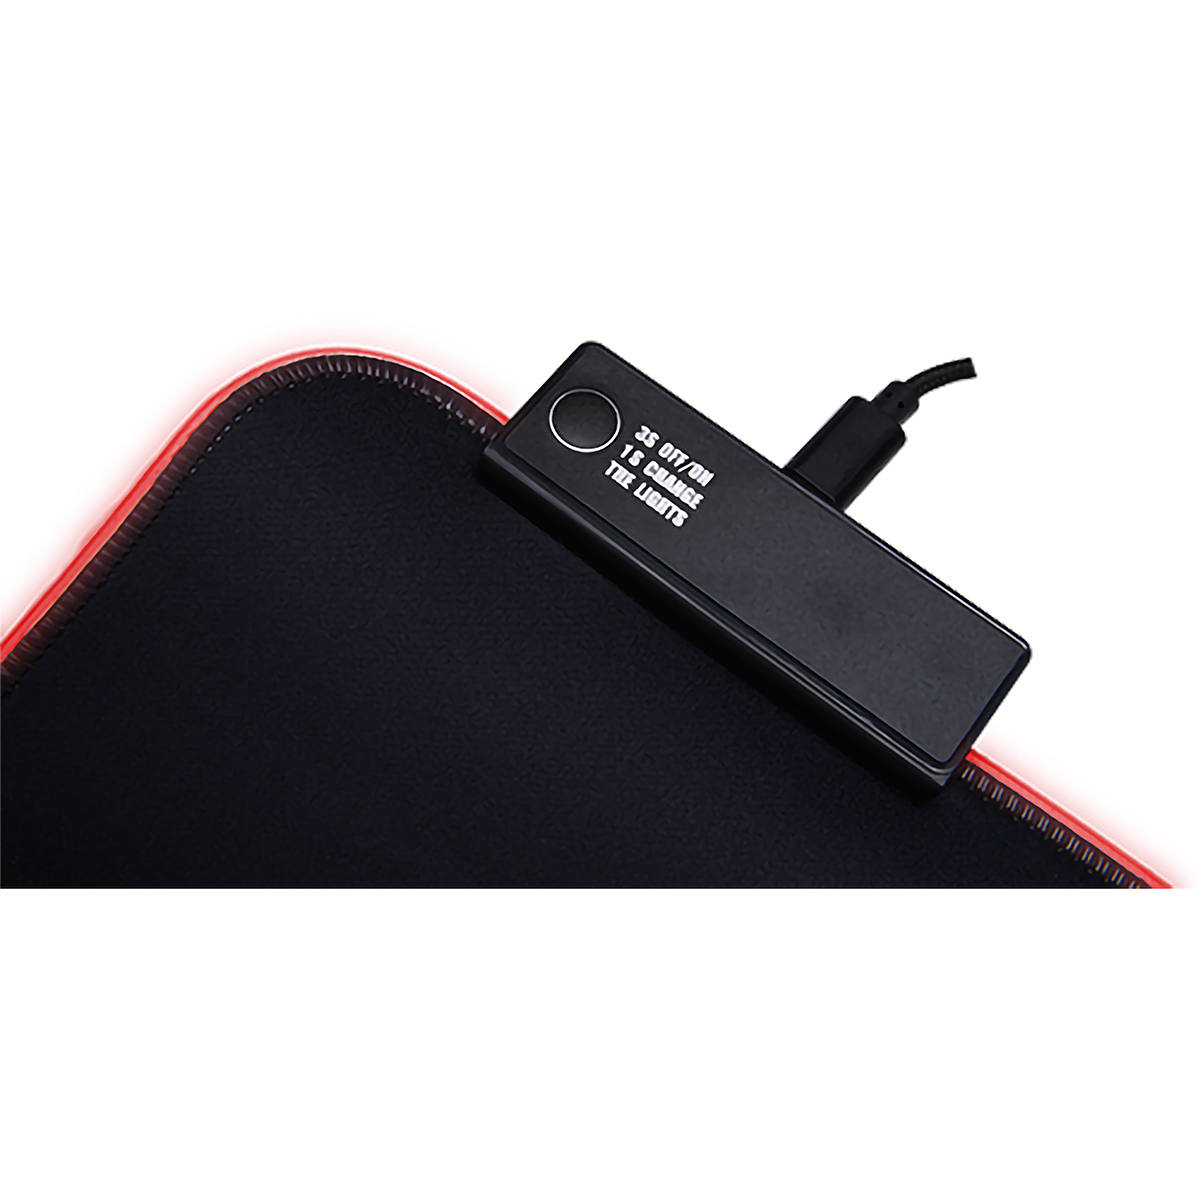 Mouse Pad Preto com LED 7 Cores Controle via Botão 360x265x3mm Superfície Speed Evolut Gamer EG-410 RGB